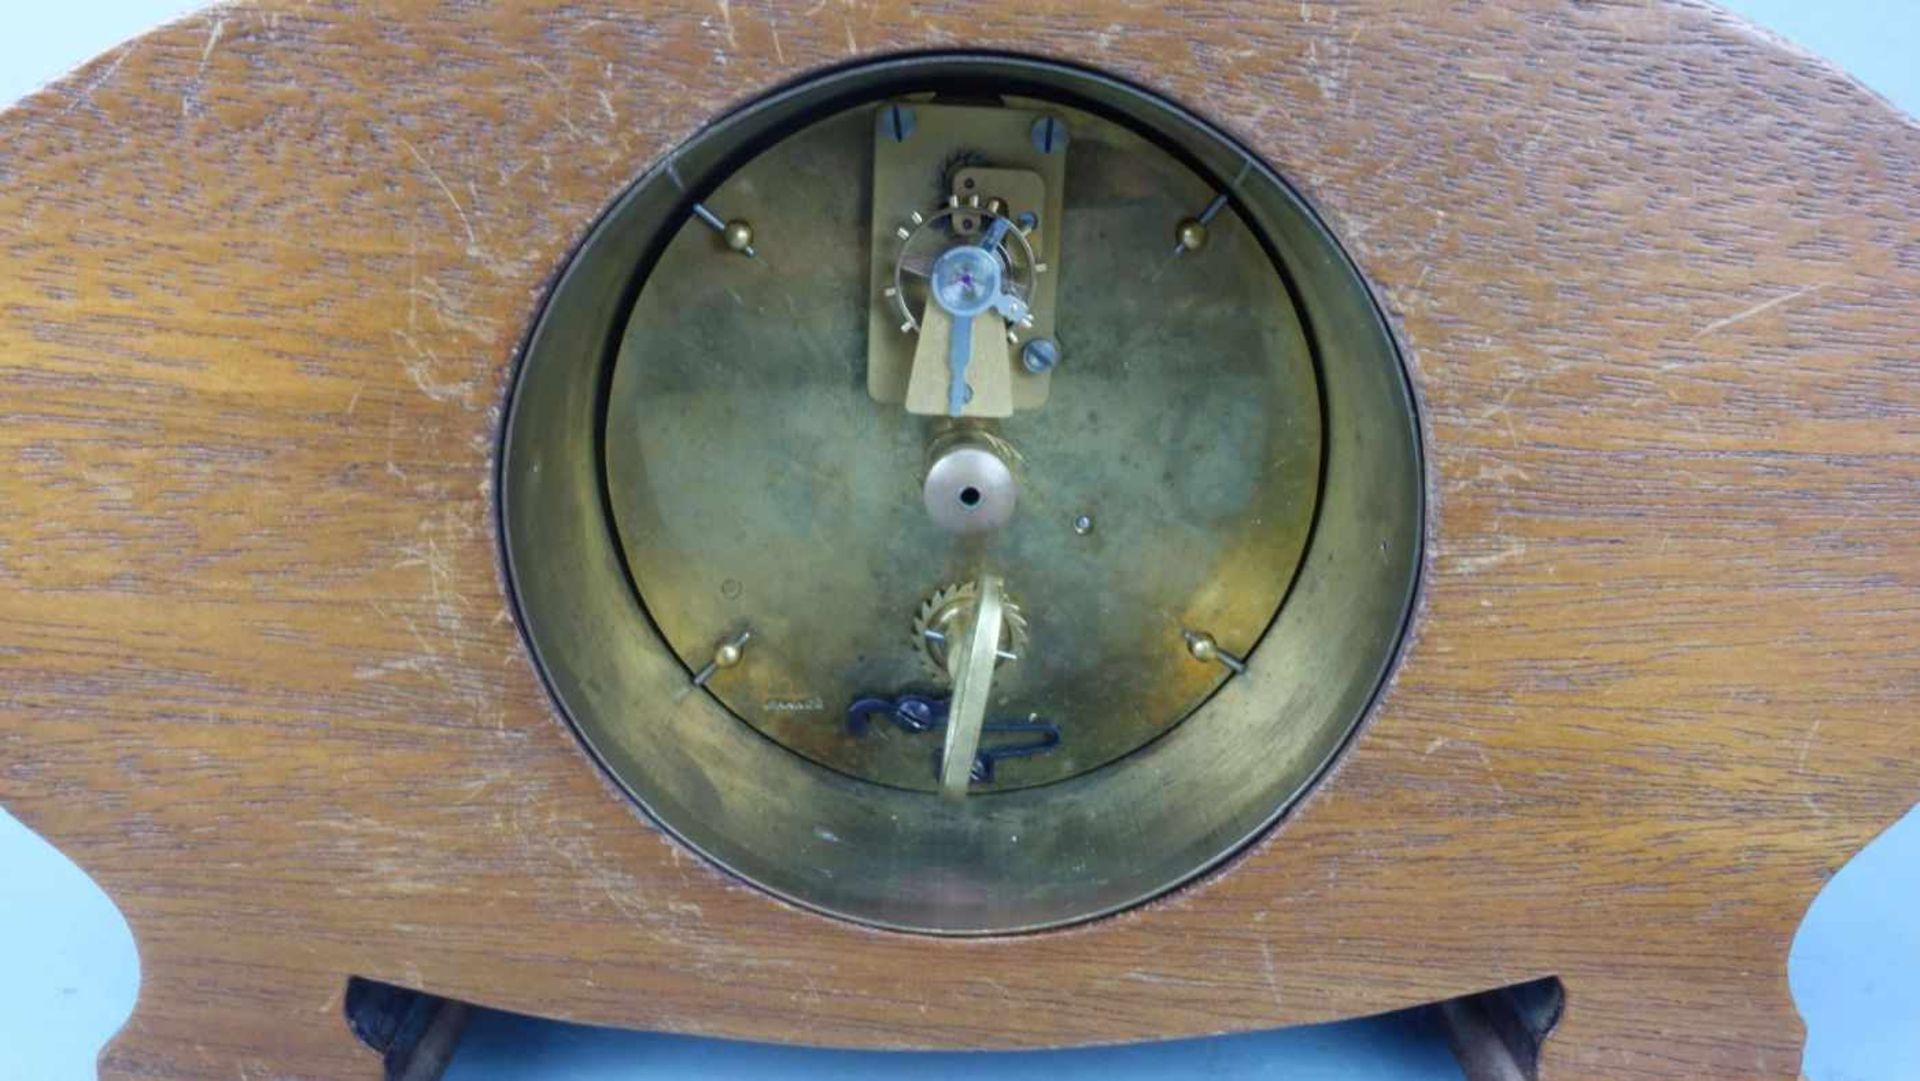 TISCHUHR / KAMINUHR / fire place clock, um 1920. Ovales Gehäuse auf zwei Füßen, dekoriert mit - Bild 4 aus 4